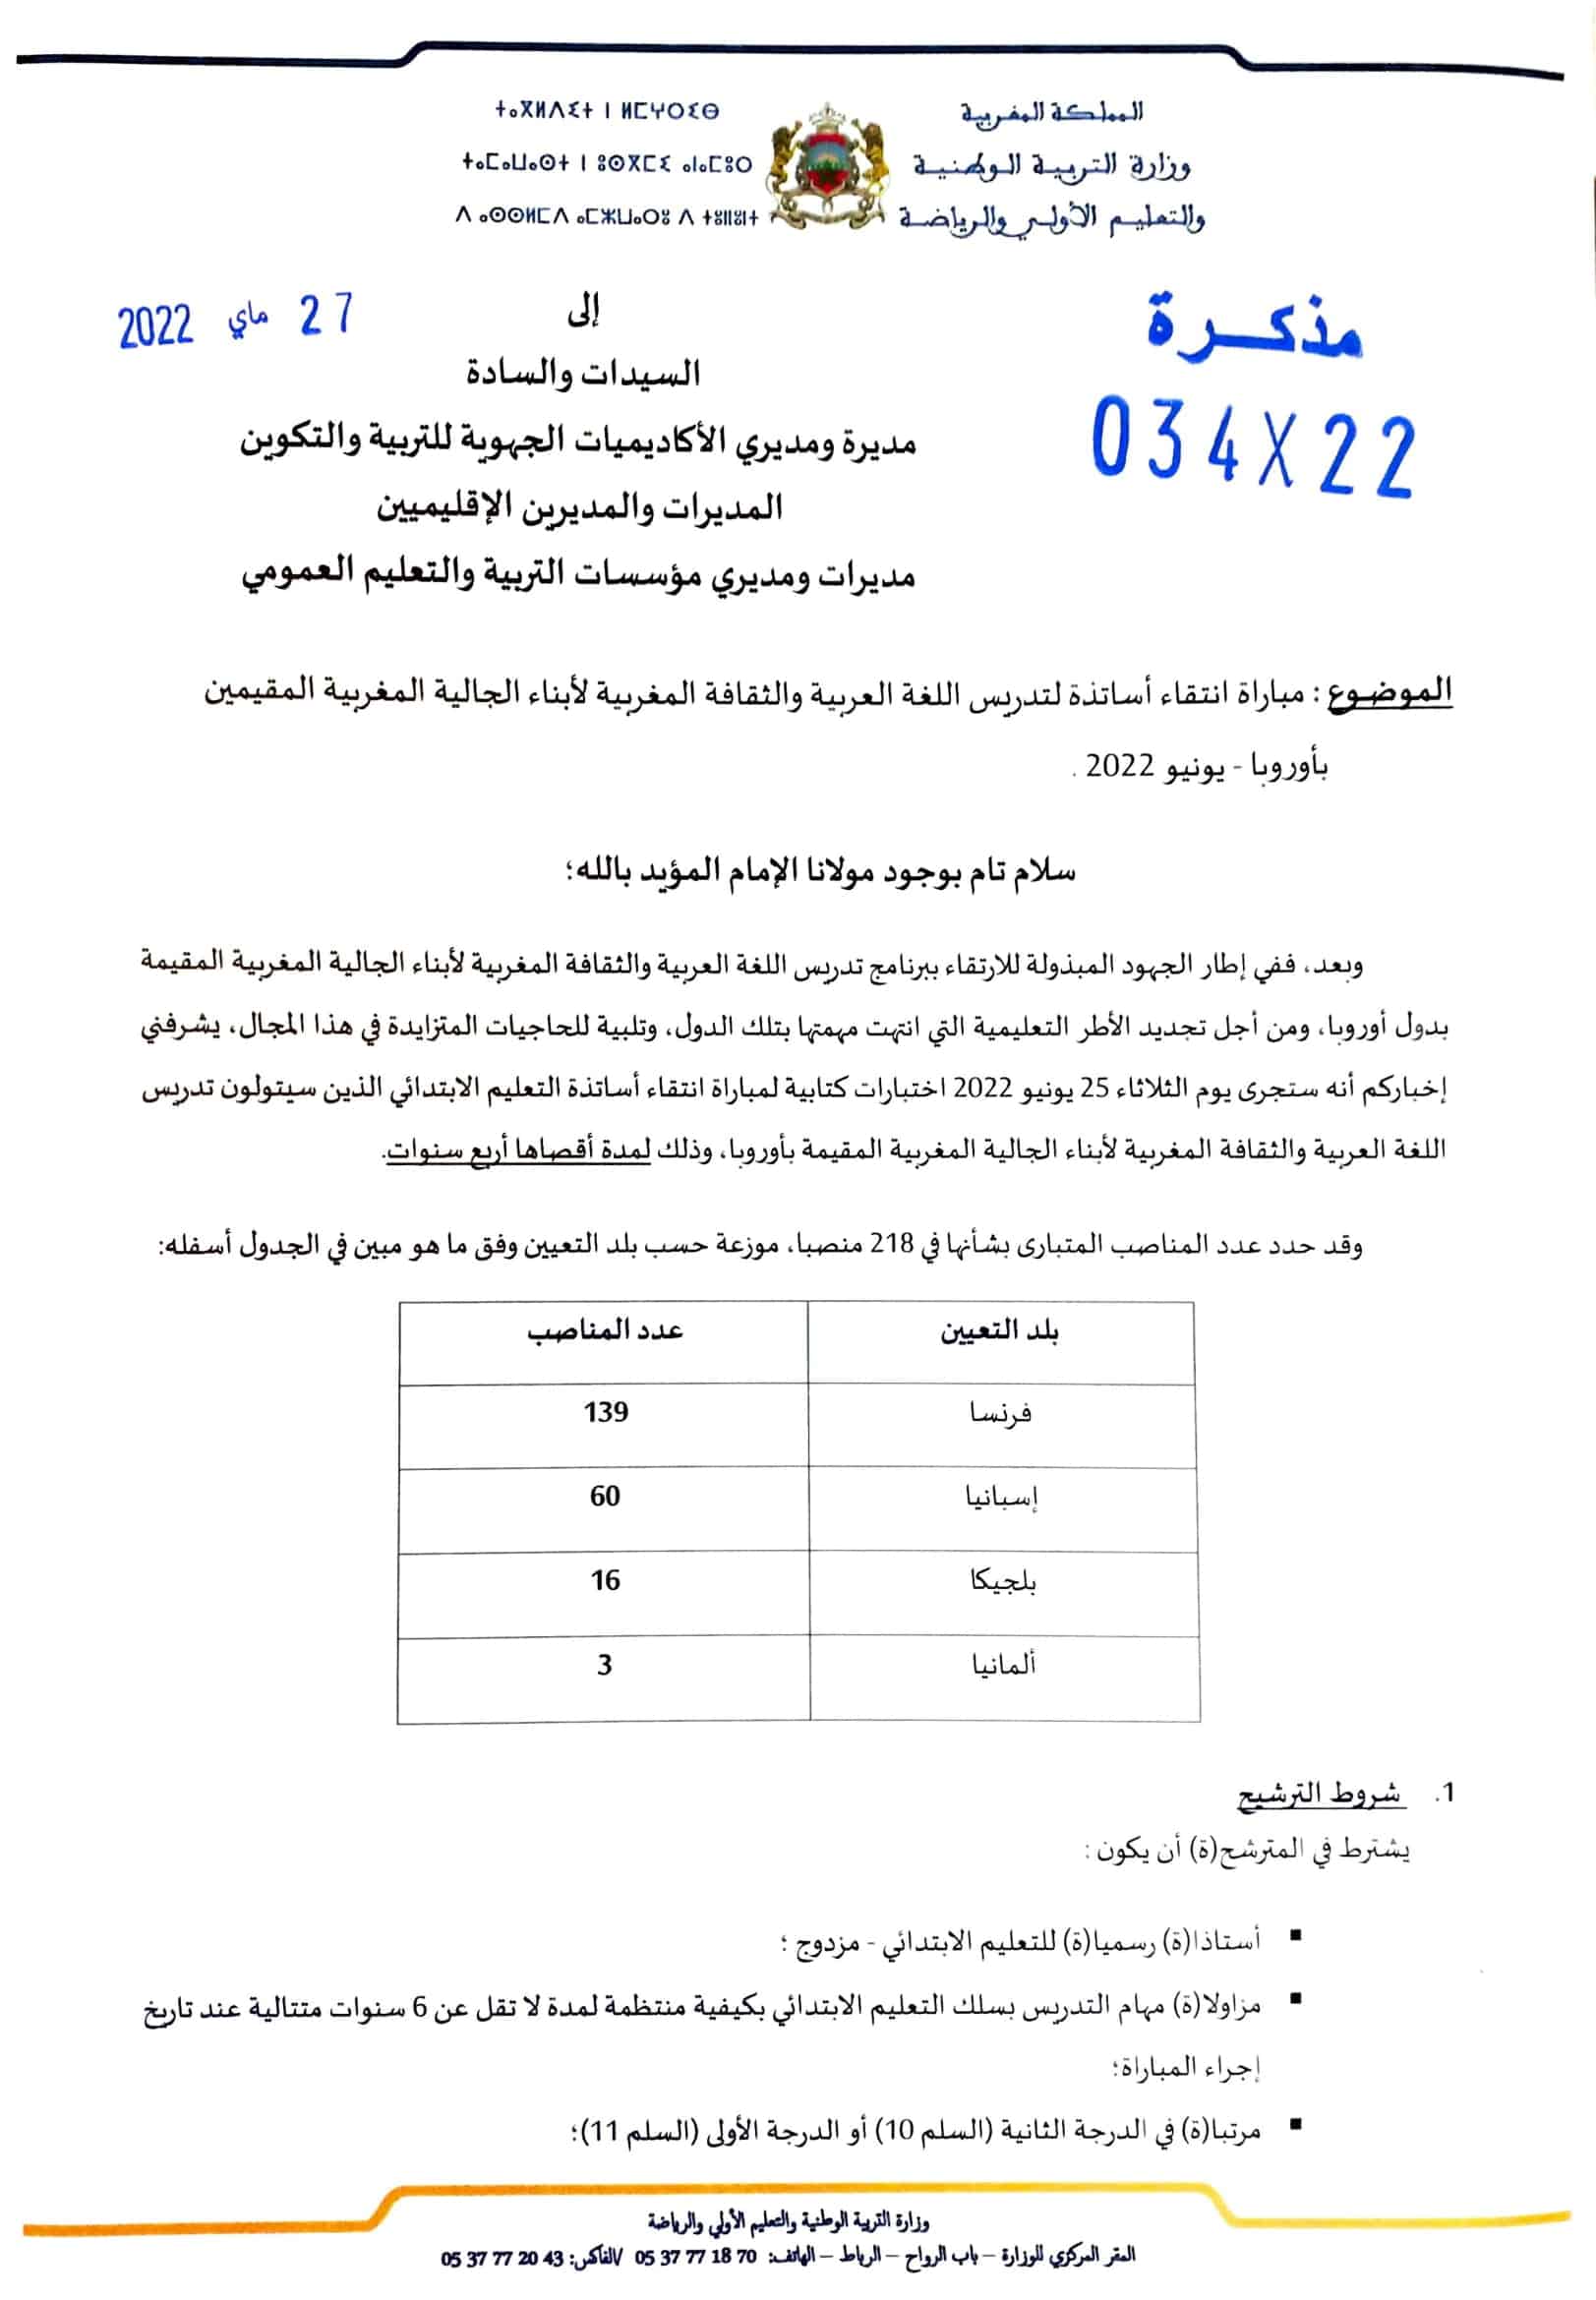 Note0342227052022 1 نتائج مباراة تدريس أبناء الجالية المغربية بأوروبا 2022